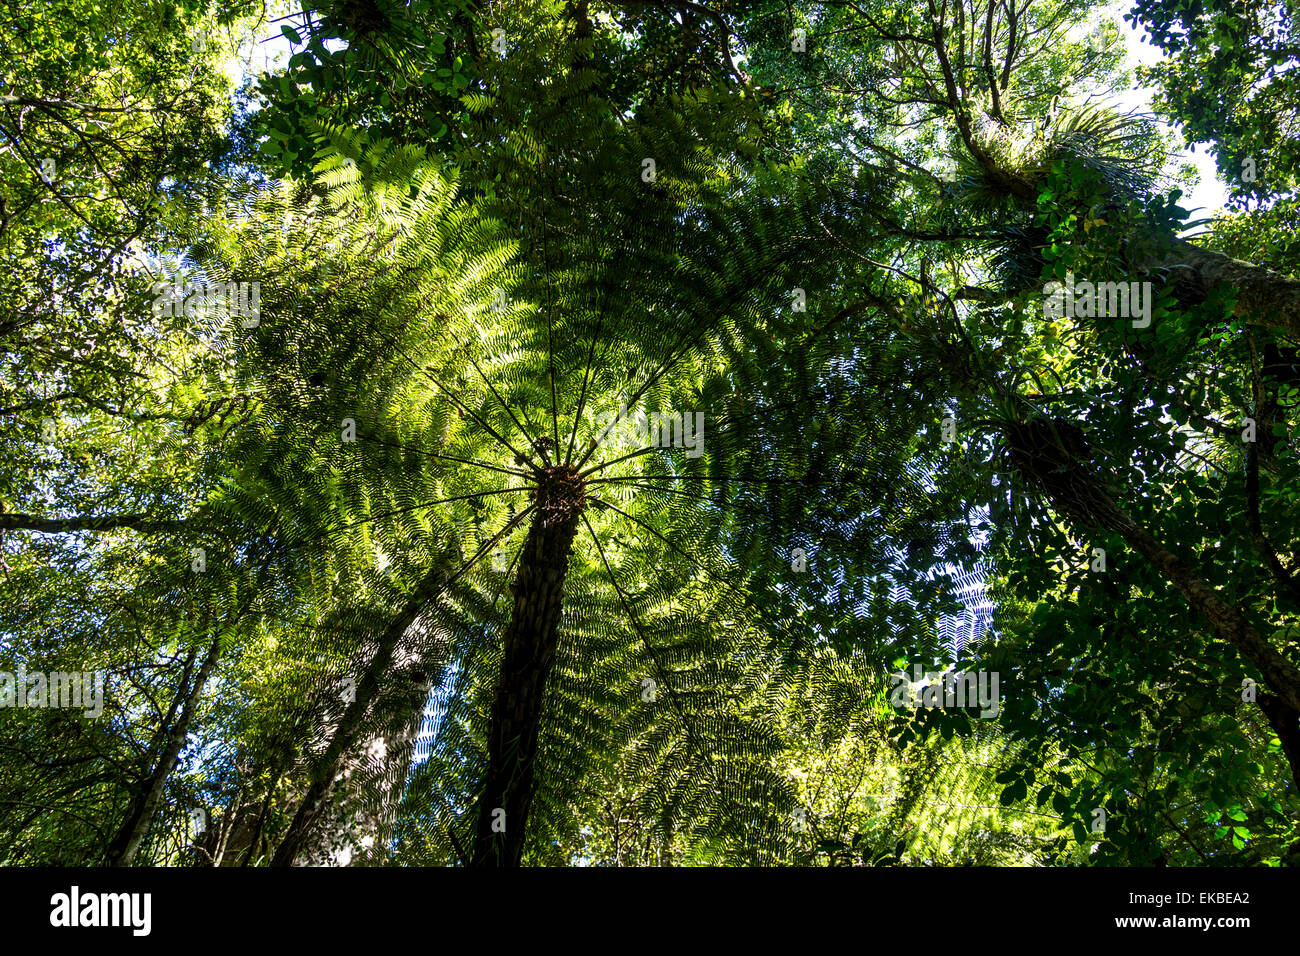 Comunemente chiamato ponga tree (parola maori), questa è la famosa silver fern o cyathea dealbata dalla Nuova Zelanda. Foto Stock